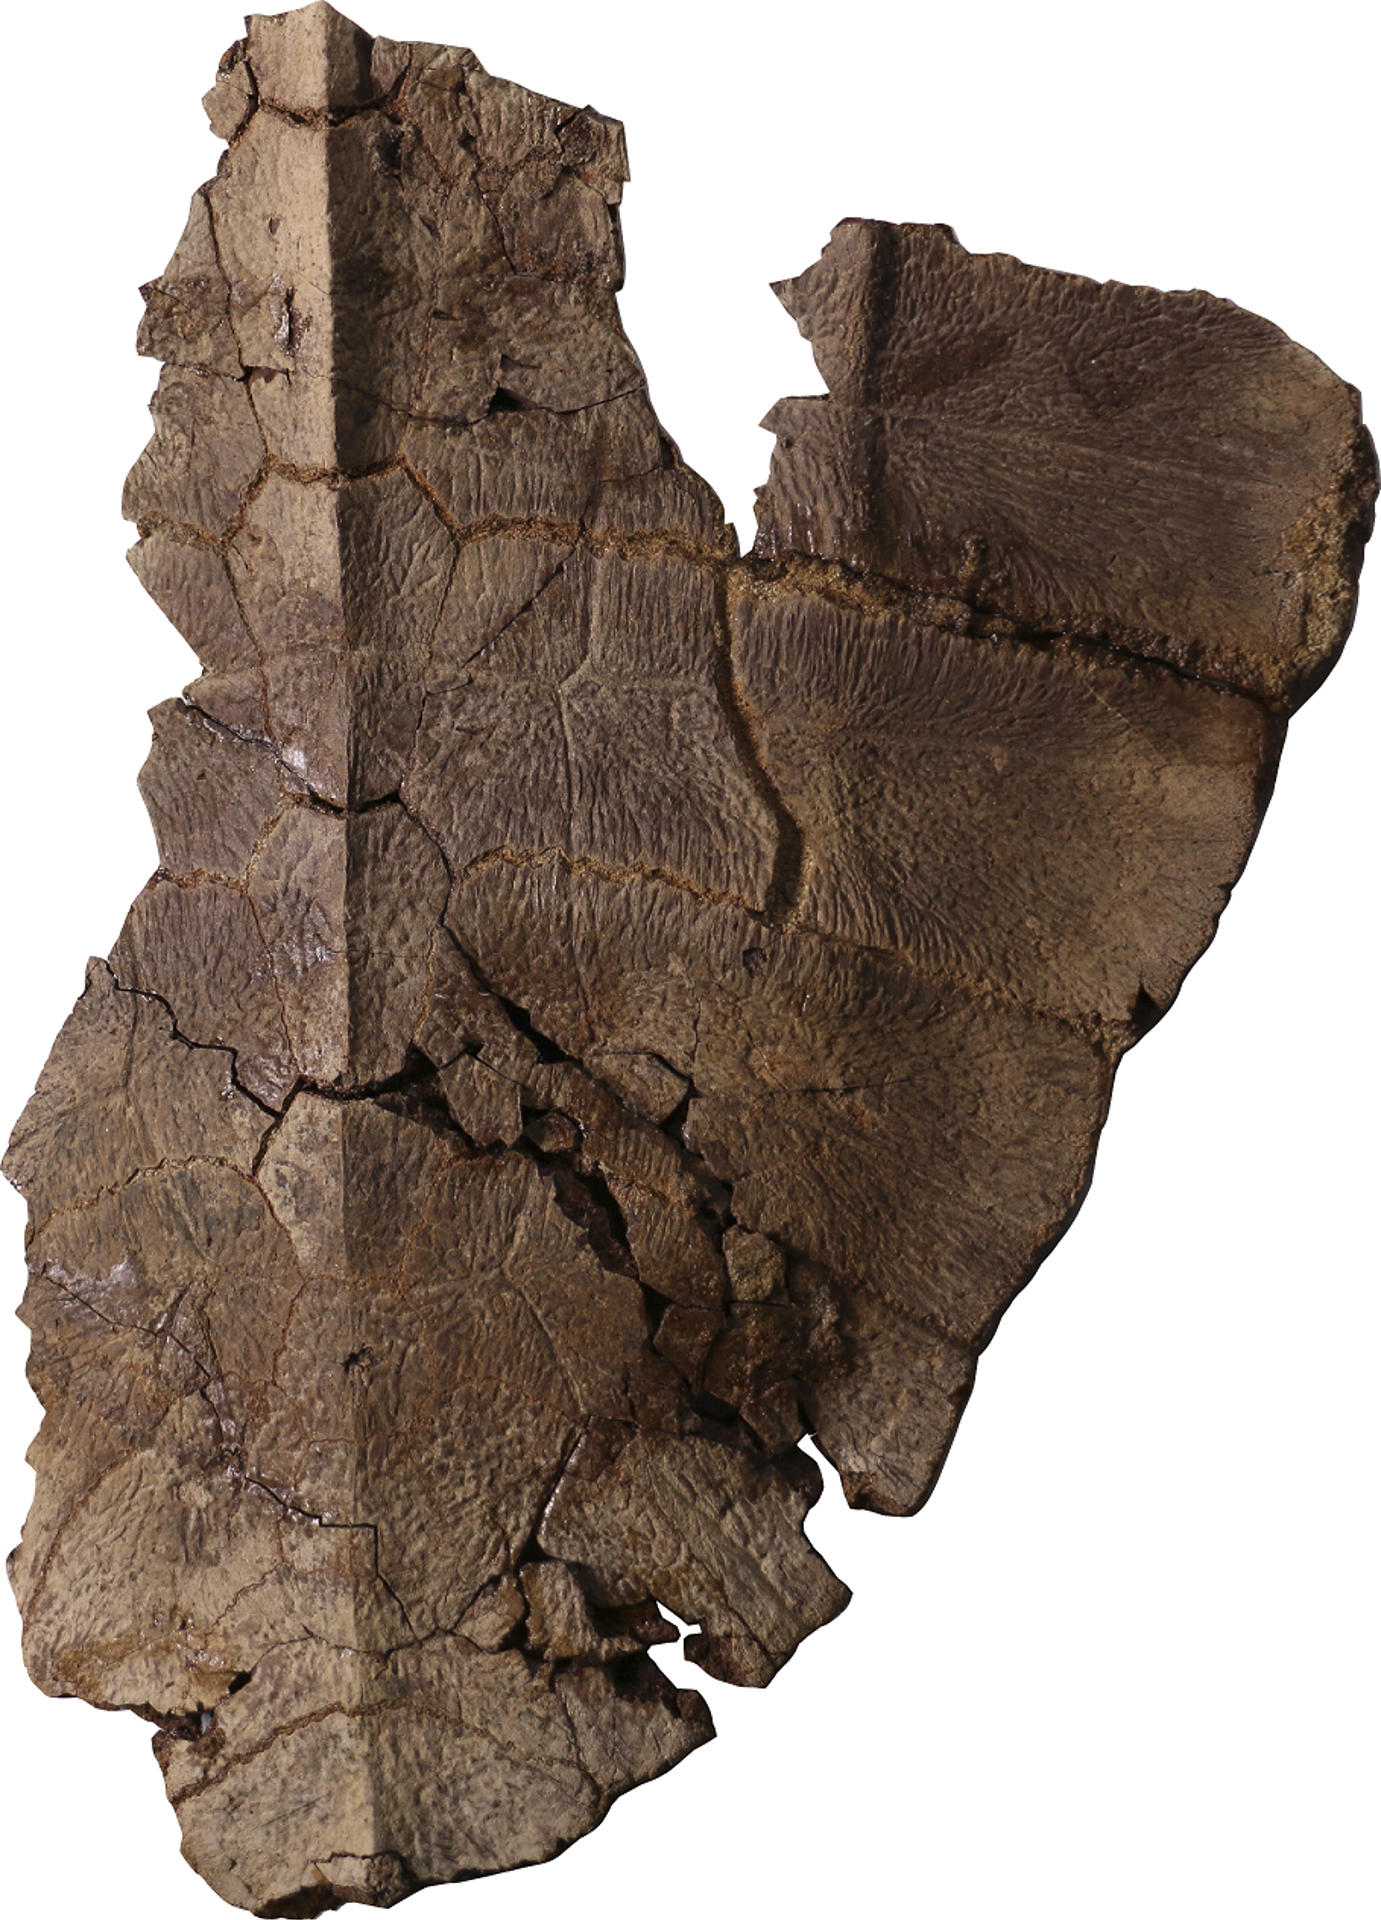 Fotografía cedida por el Instituto Smithsonian de Investigaciones Tropicales que muestra parte del fósil de tortuga hallado en la costa Caribe de Panamá.EFE/ Instituto Smithsonian de Investigaciones Tropicales